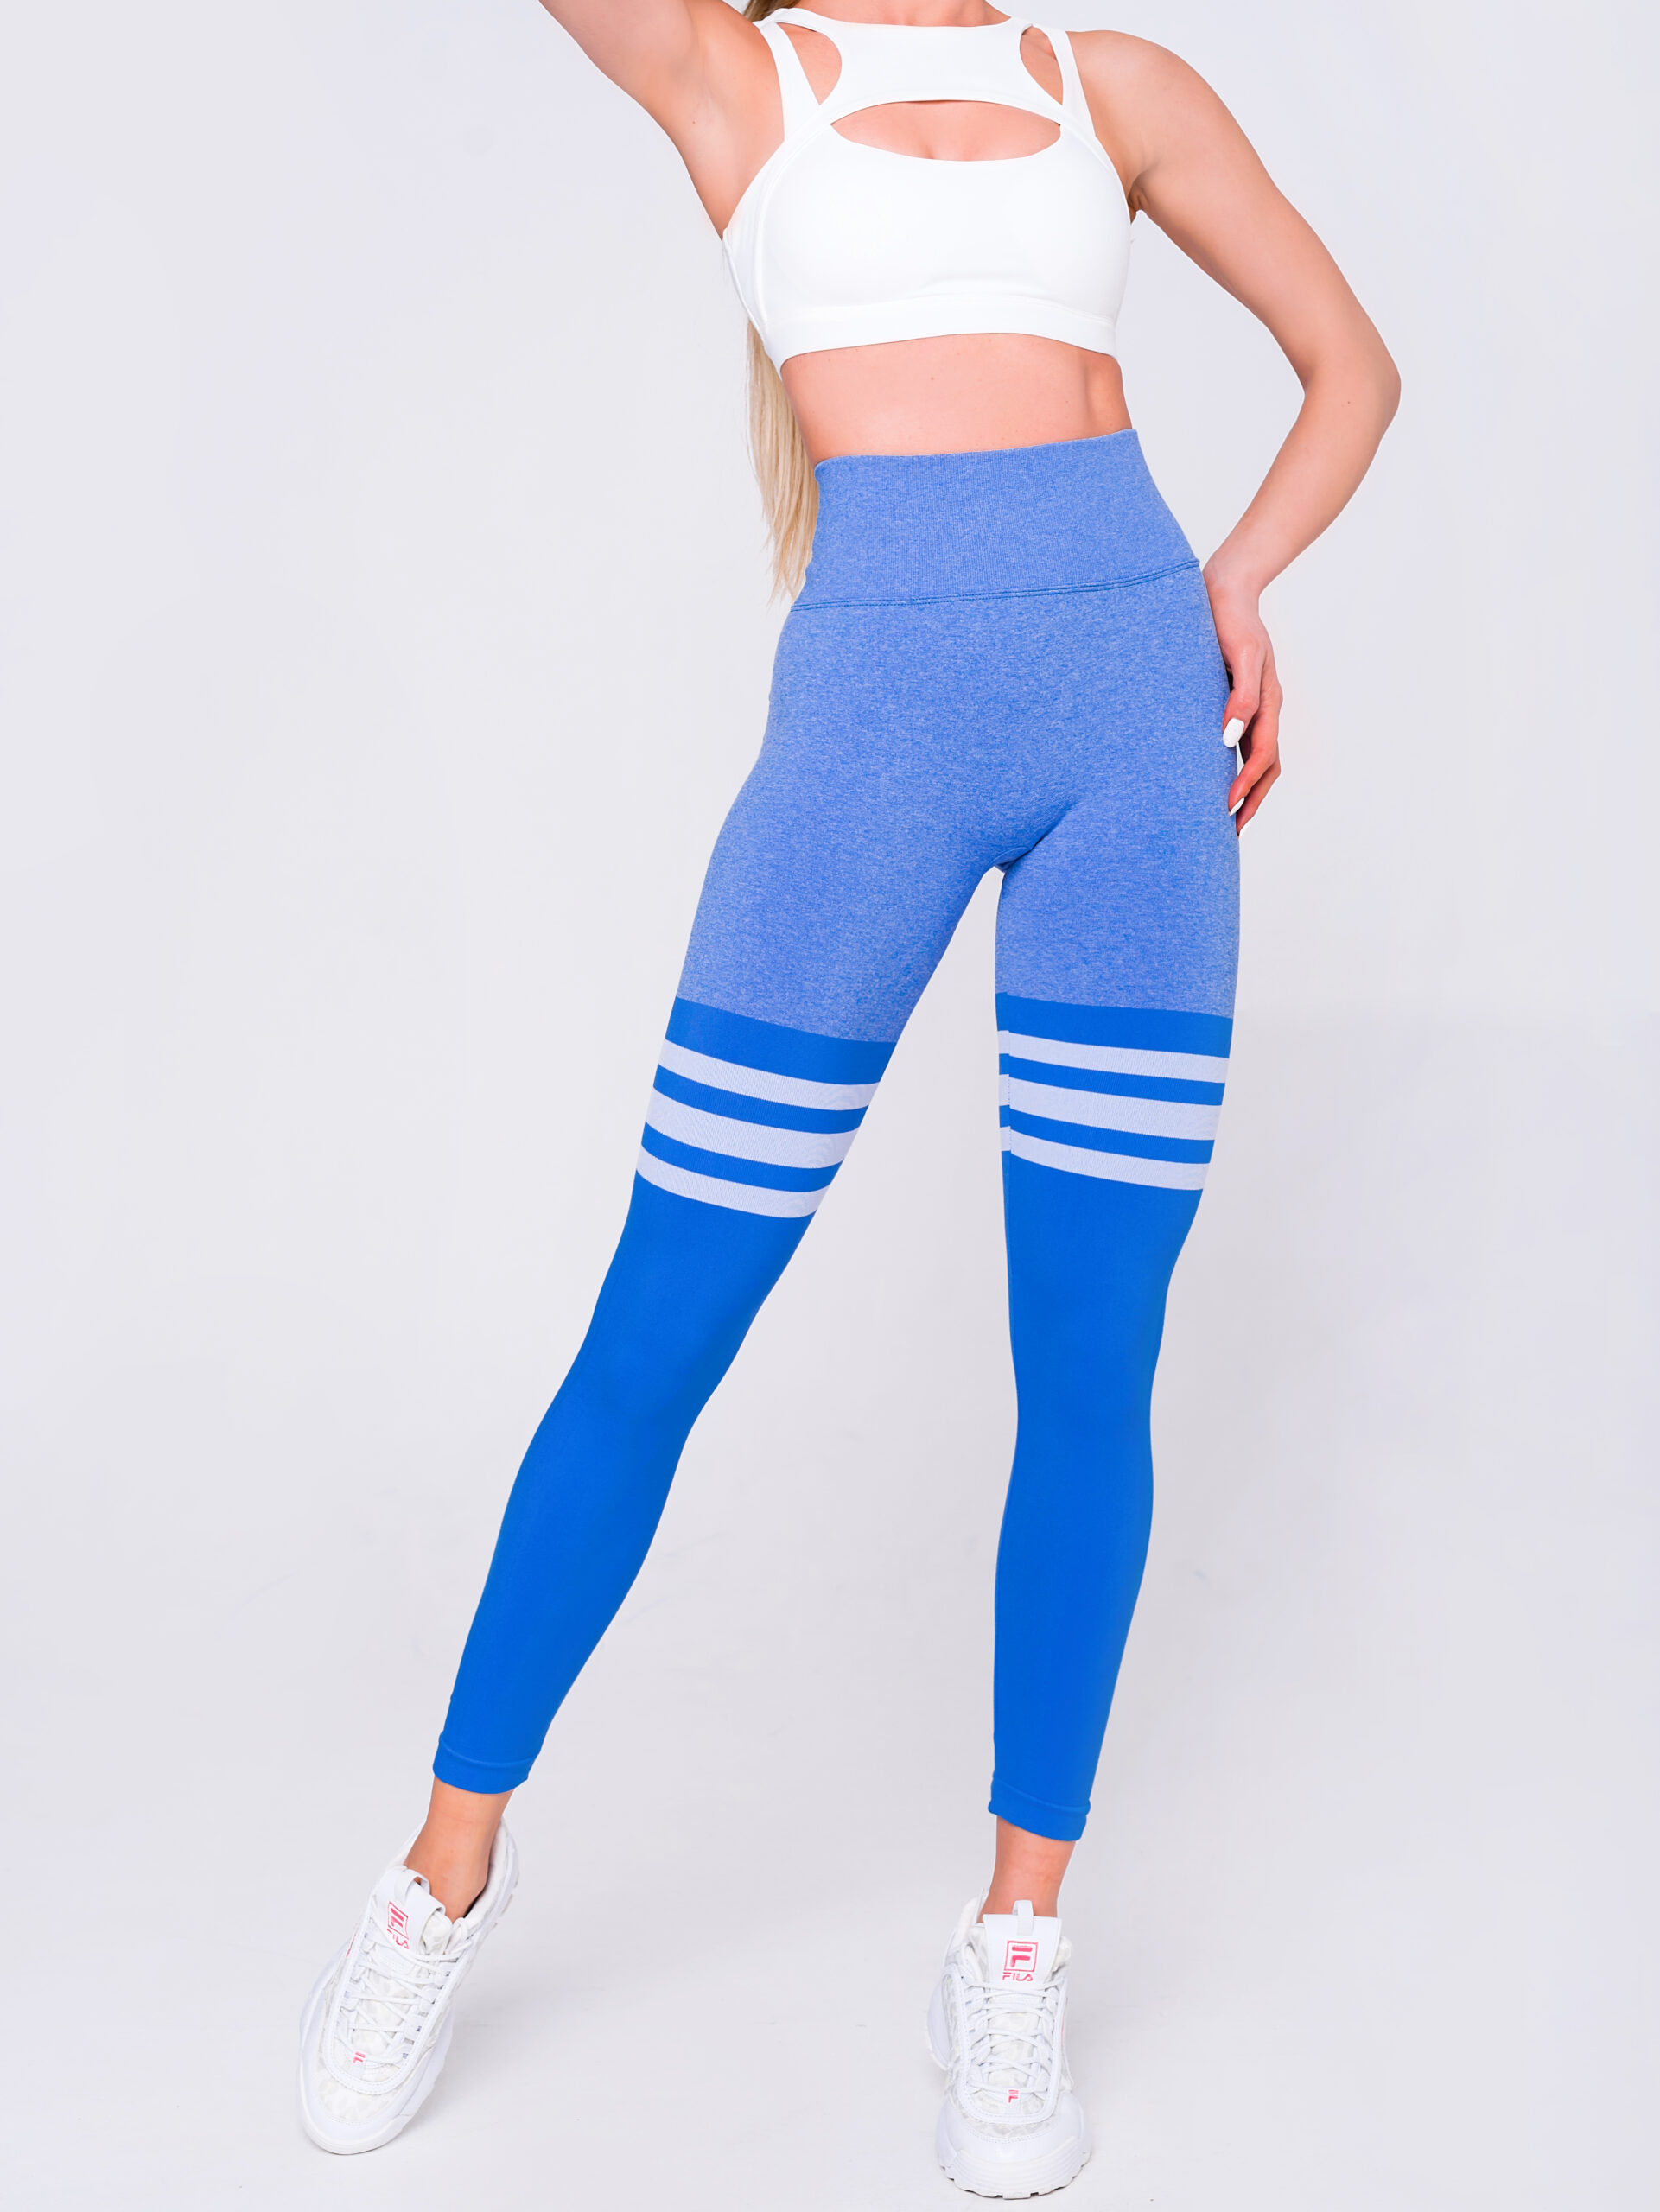 Buy Blue & Blue Leggings for Women by GRACIT Online | Ajio.com-vinhomehanoi.com.vn